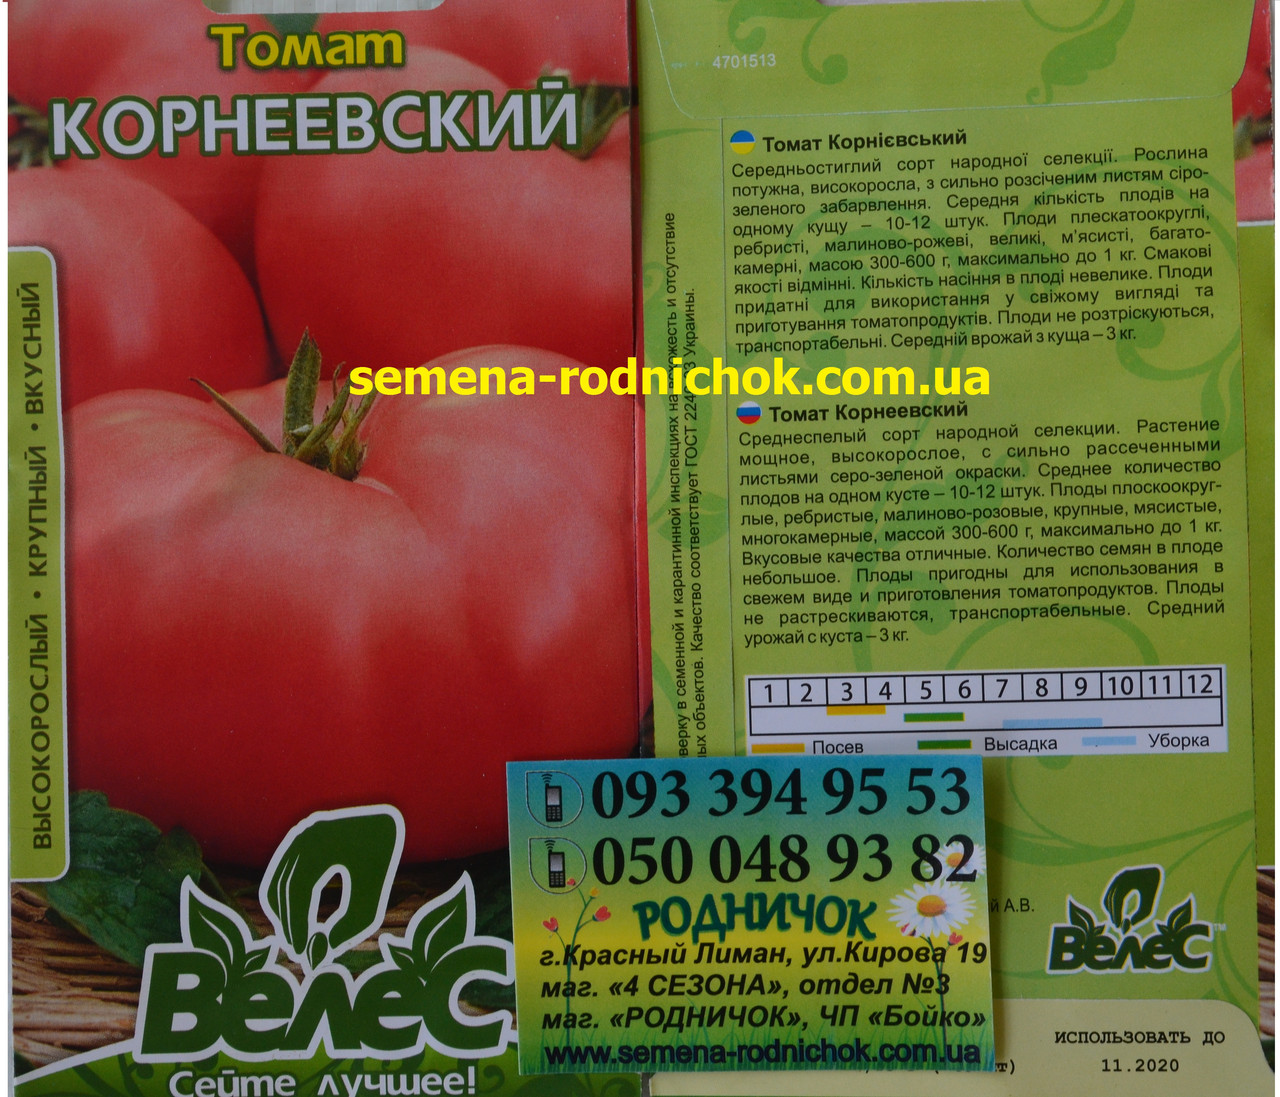 Томат корнеевский: характеристика и описание красного сорта, фото семян, отзывы об урожайности